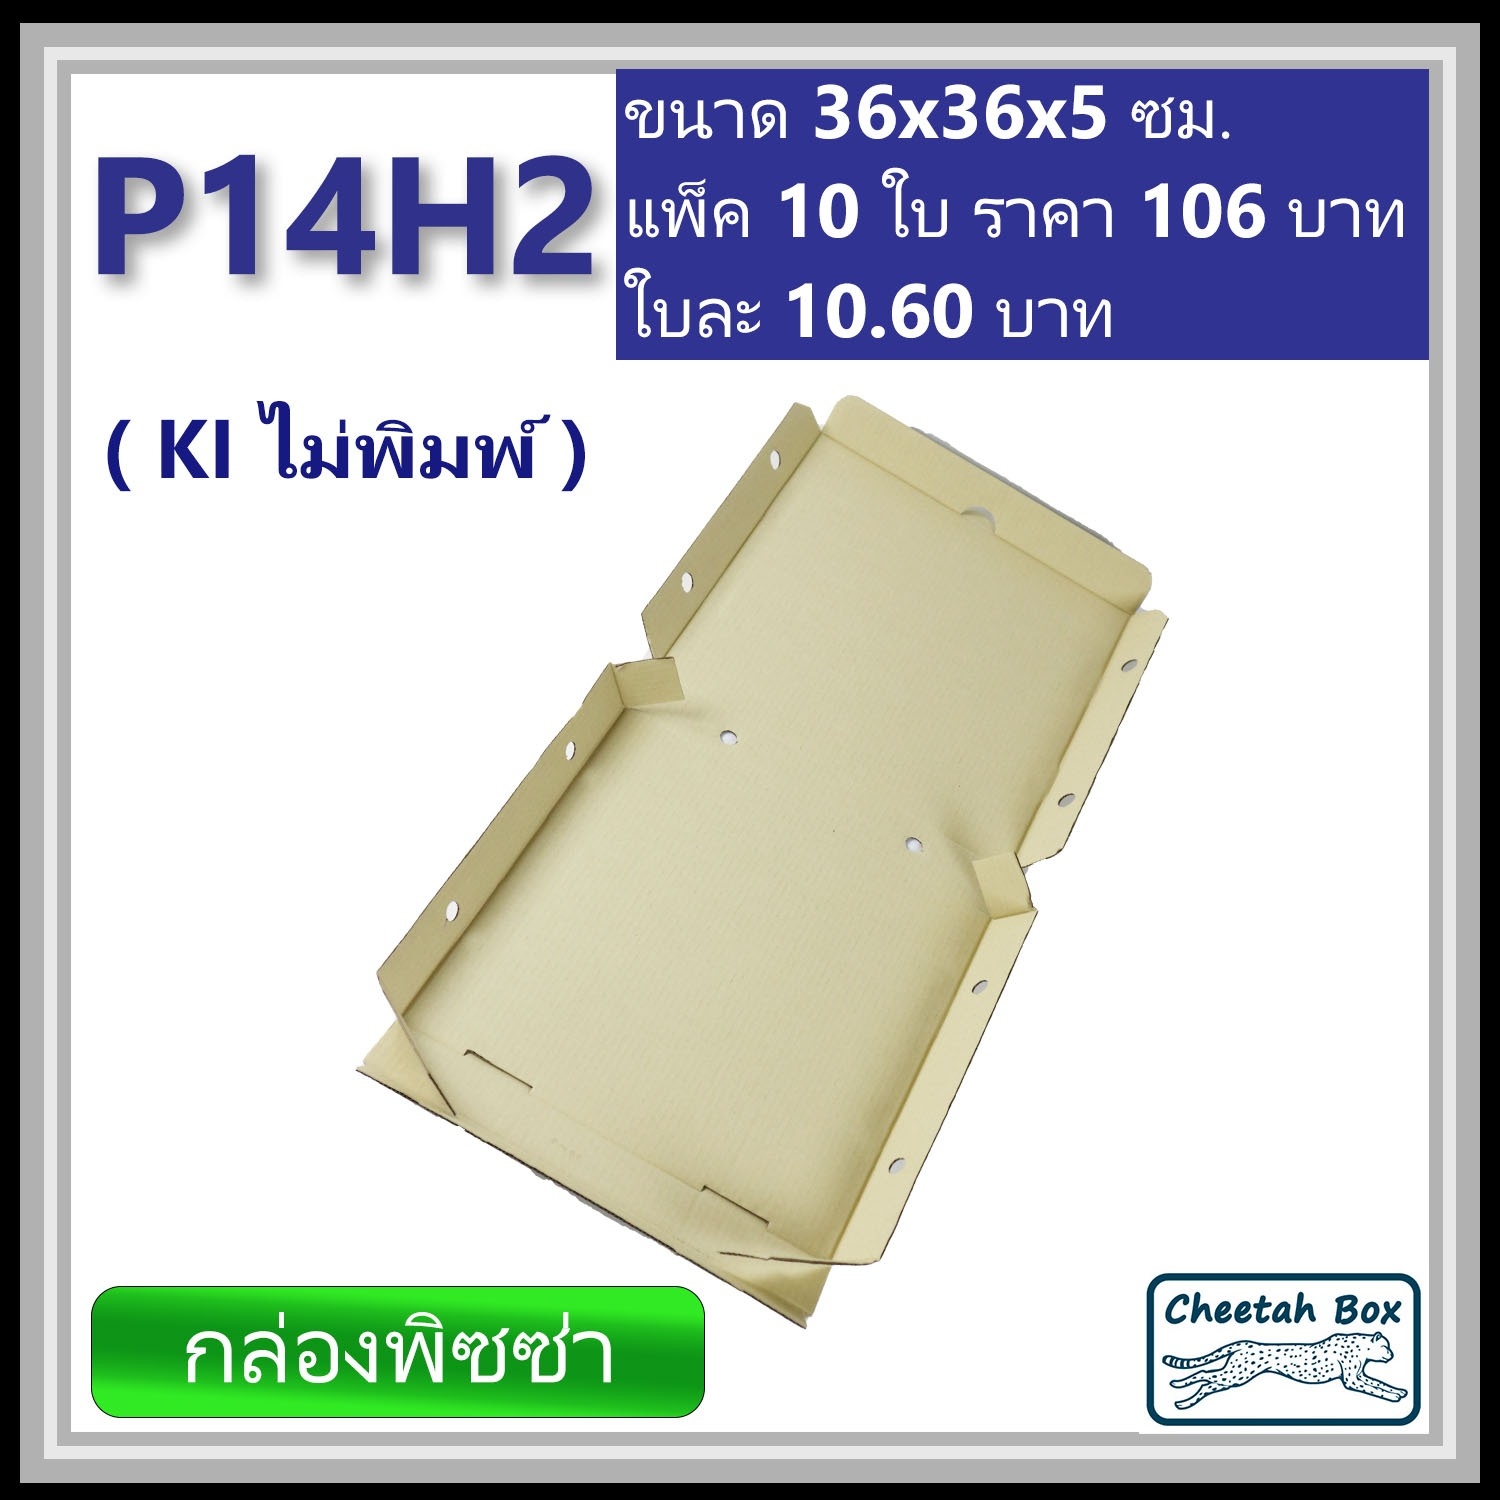 กล่องพิซซ่า 14 นิ้วสูง 2 นิ้ว รหัส P14H2 ไม่พิมพ์ (Pizza Box) ขนาด 36W x 36L x 5H cm.